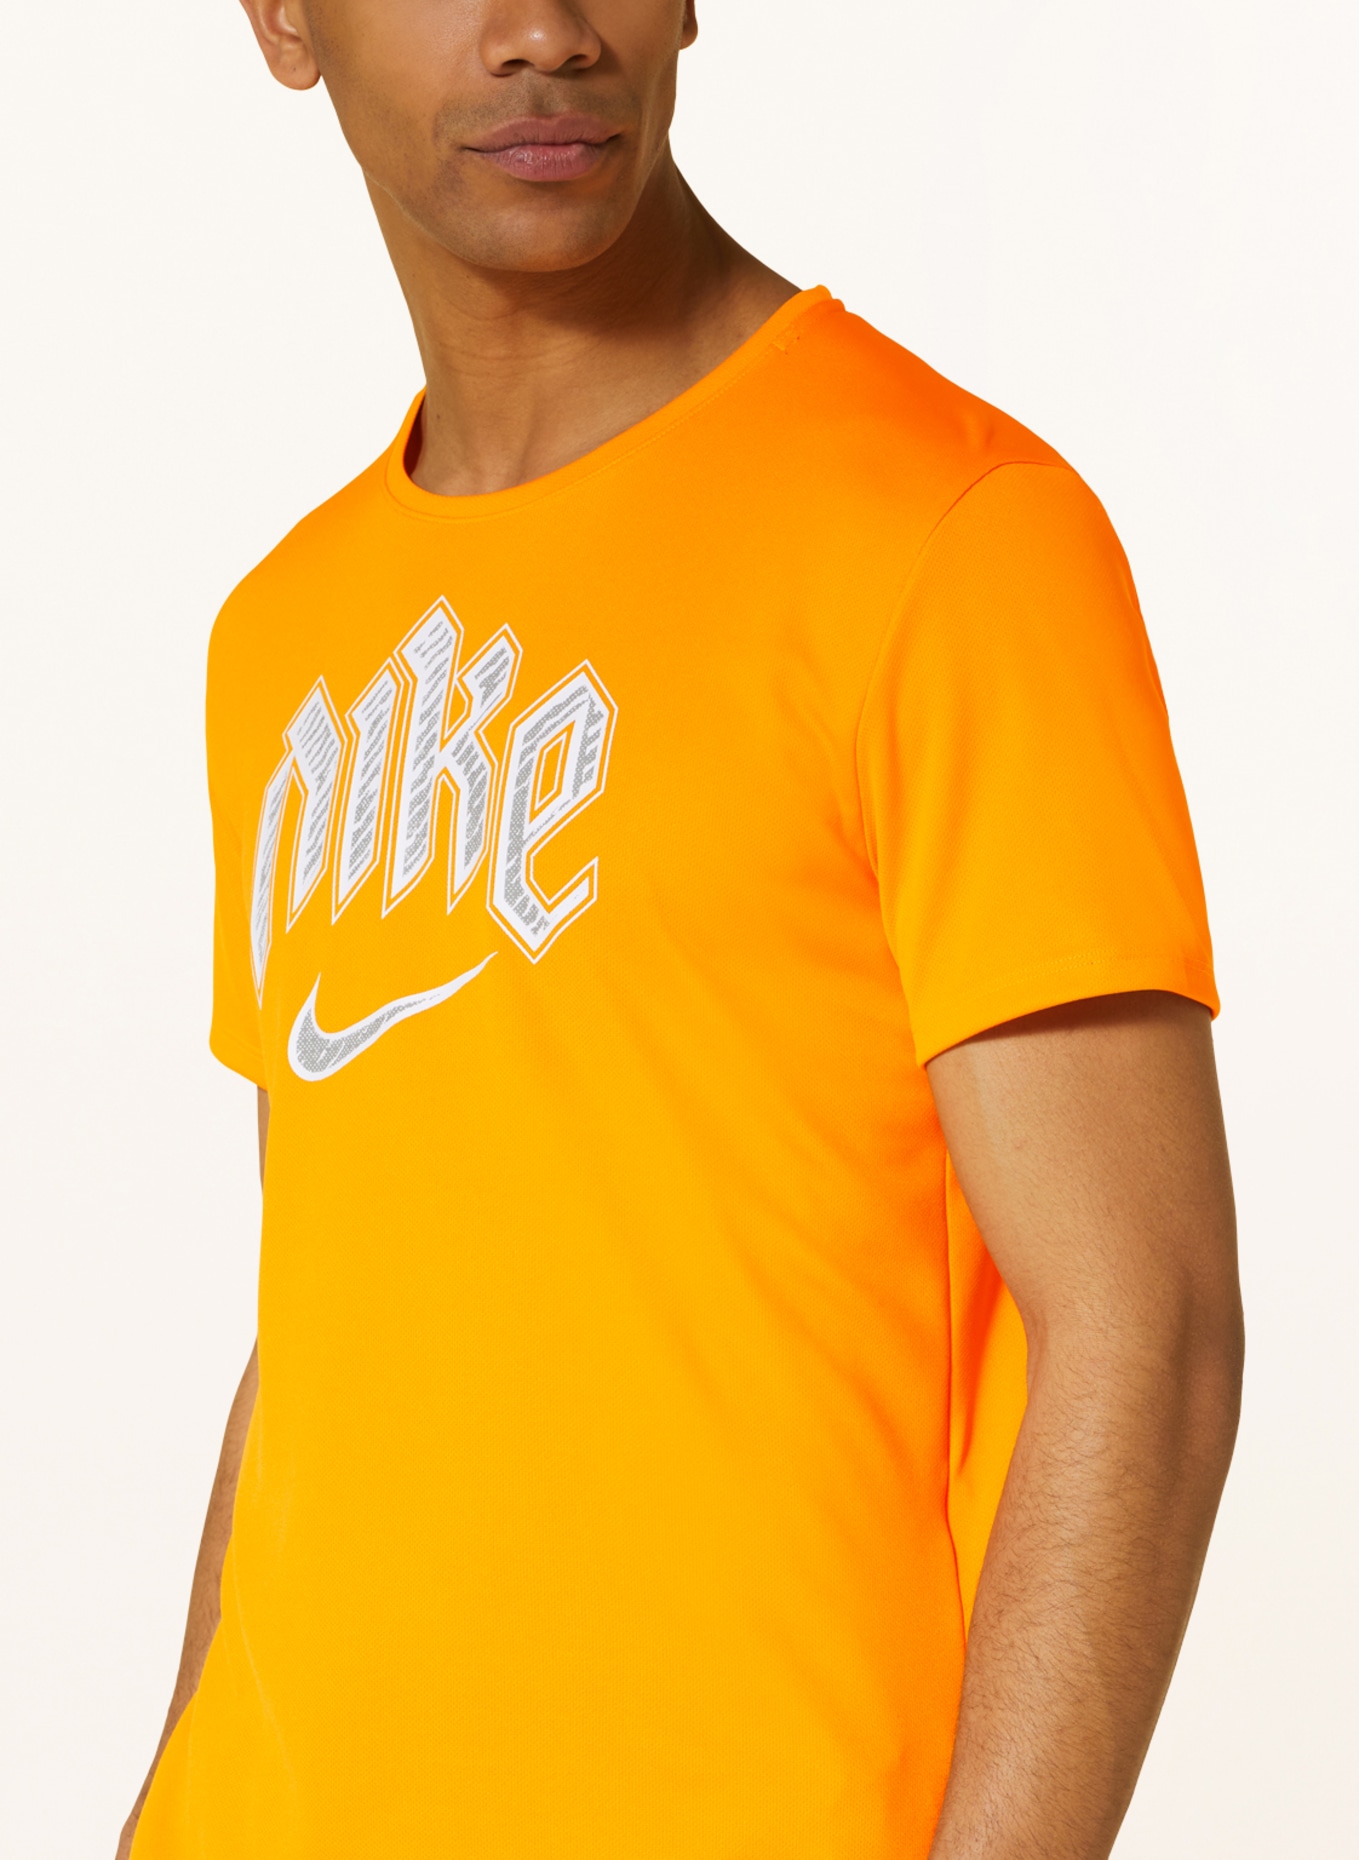 Nike Running shirt DRI-FIT RUN DIVISION MILER, Color: NEON ORANGE (Image 4)